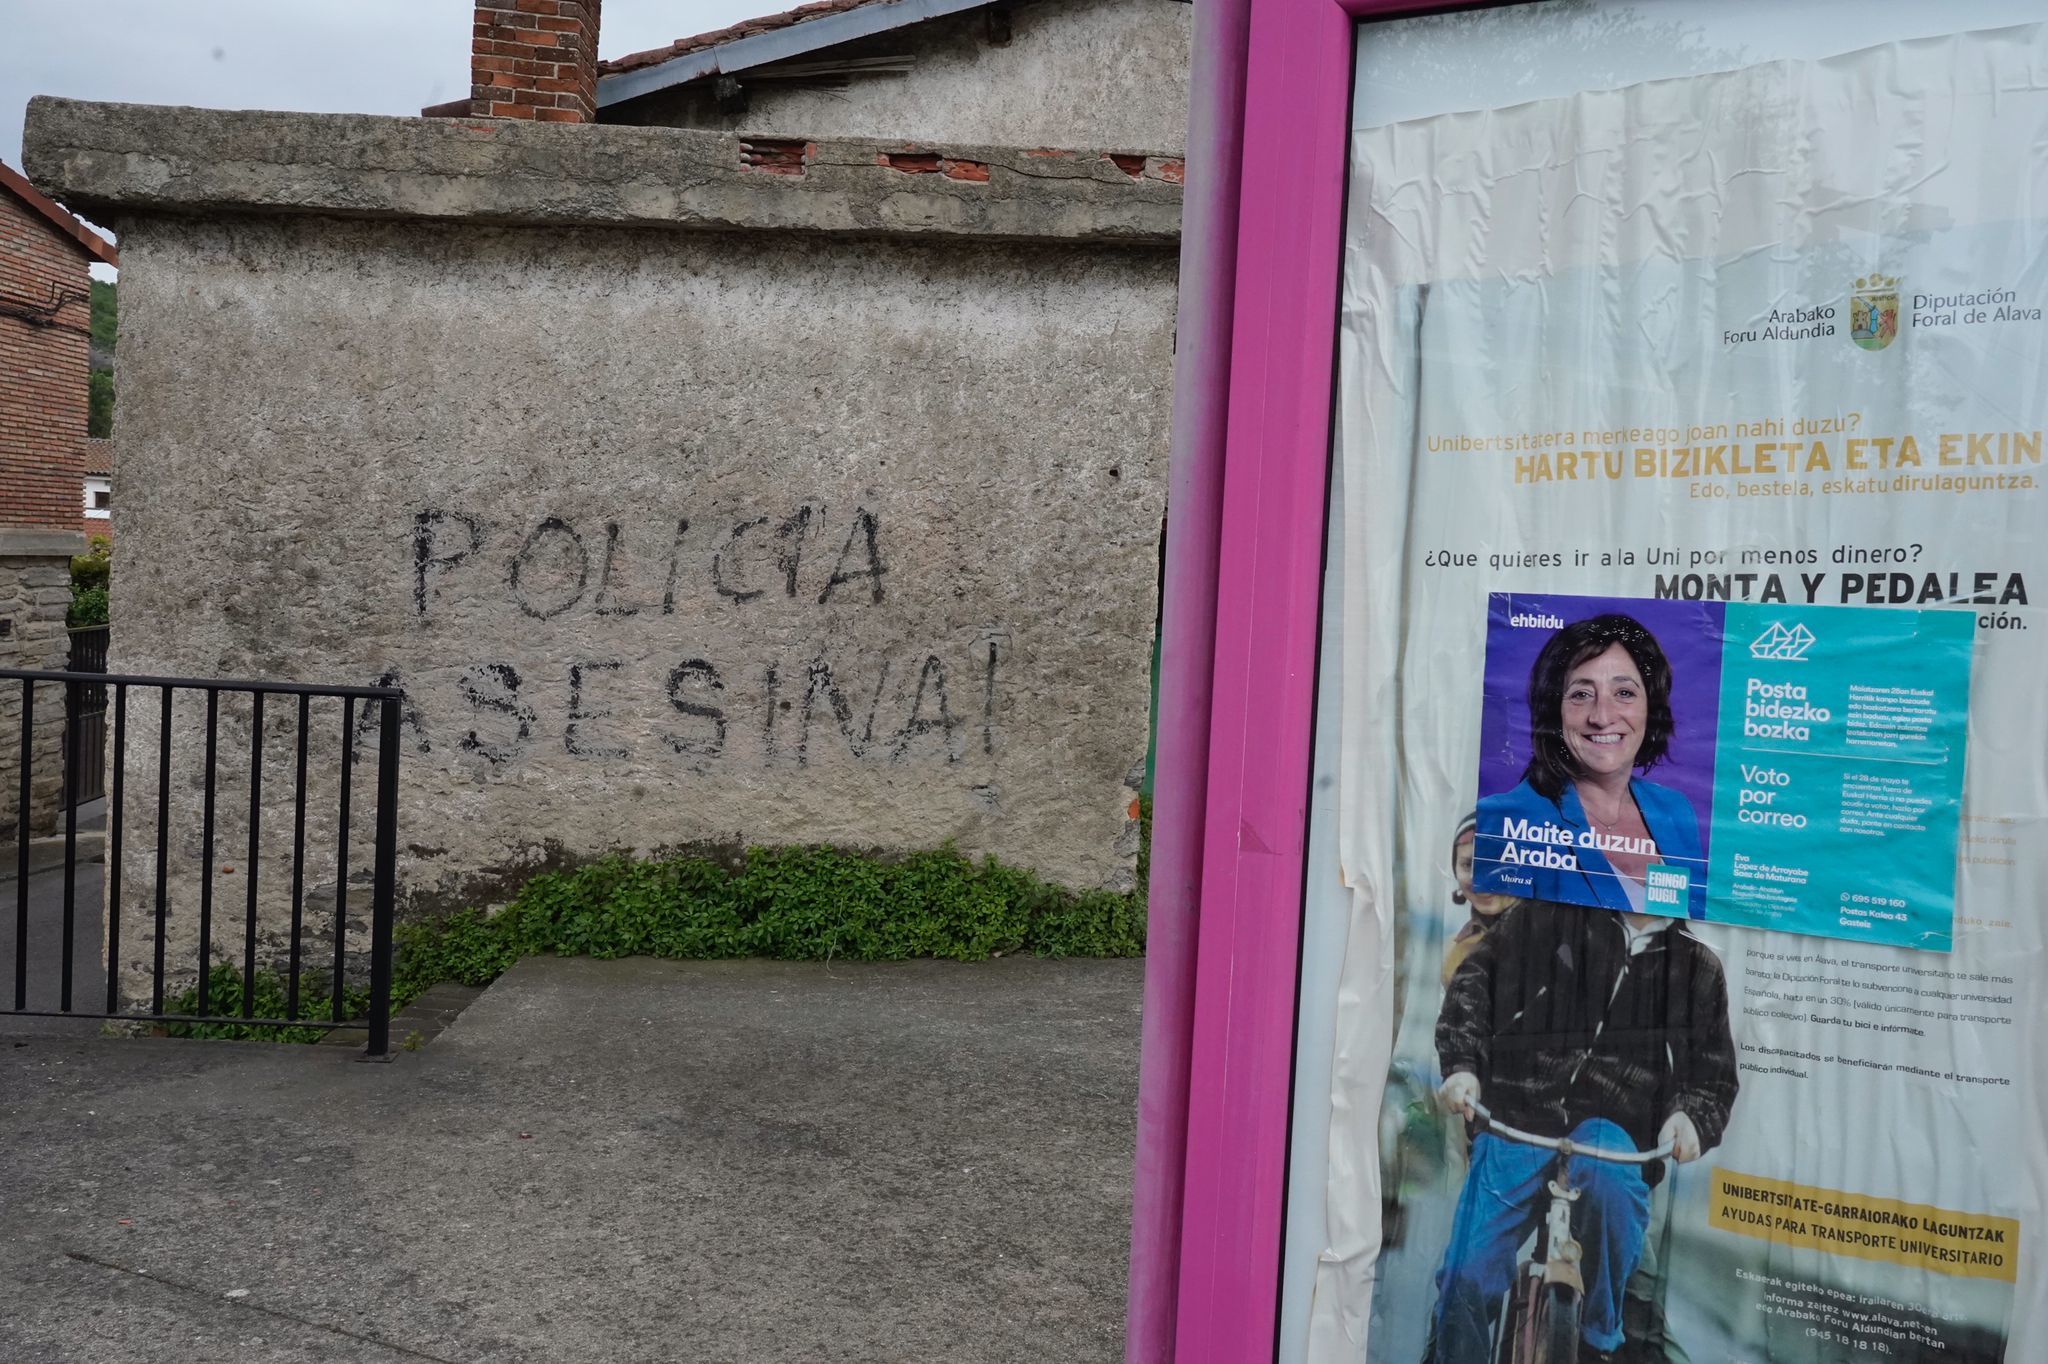 Una pintada contra la Polica se exhibe en una casa de Urbina junto a un cartel electoral de Bildu.